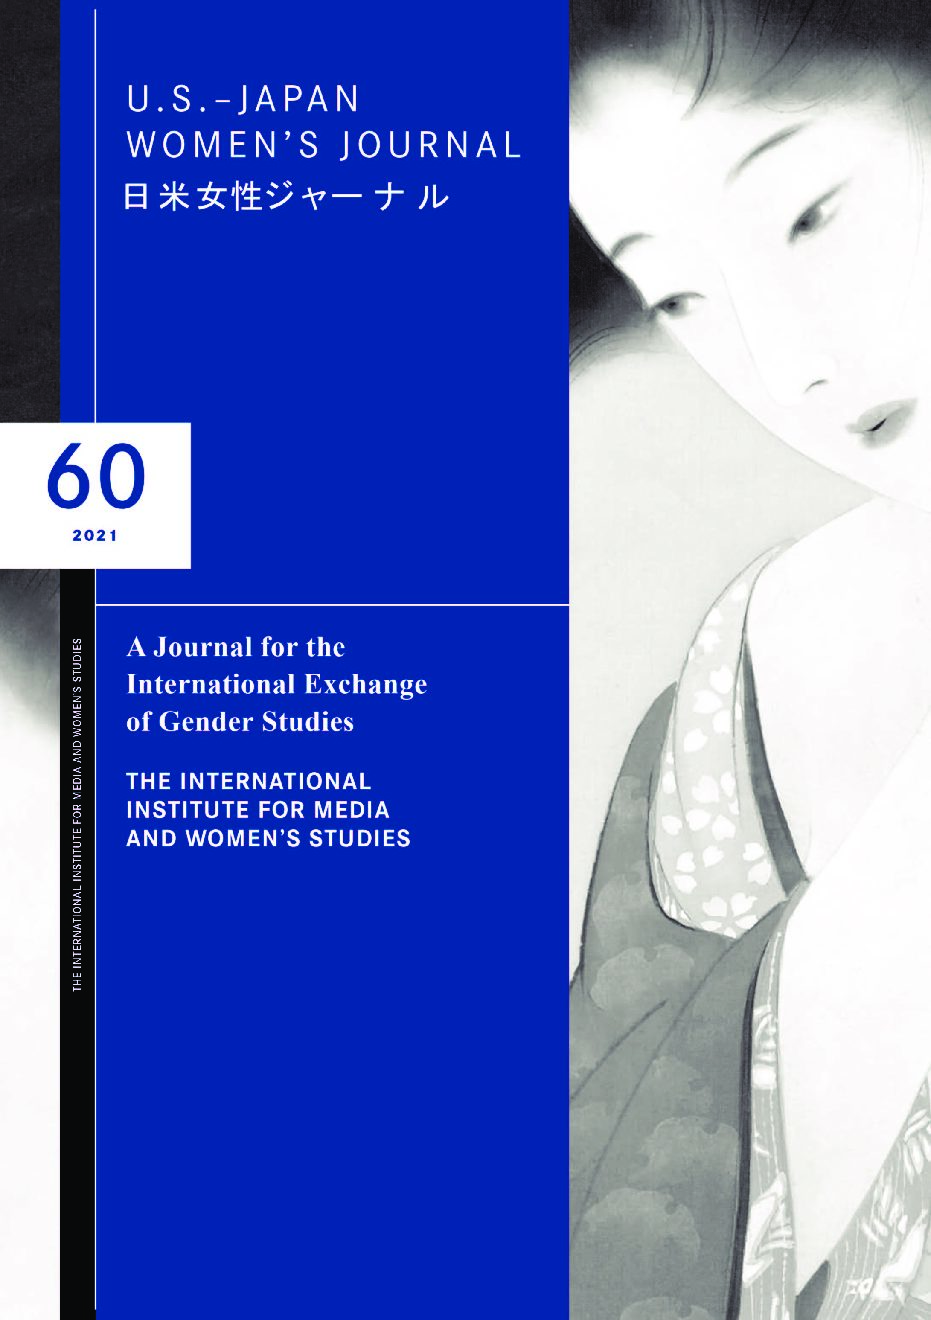 U.S.-Japan Women's Journal